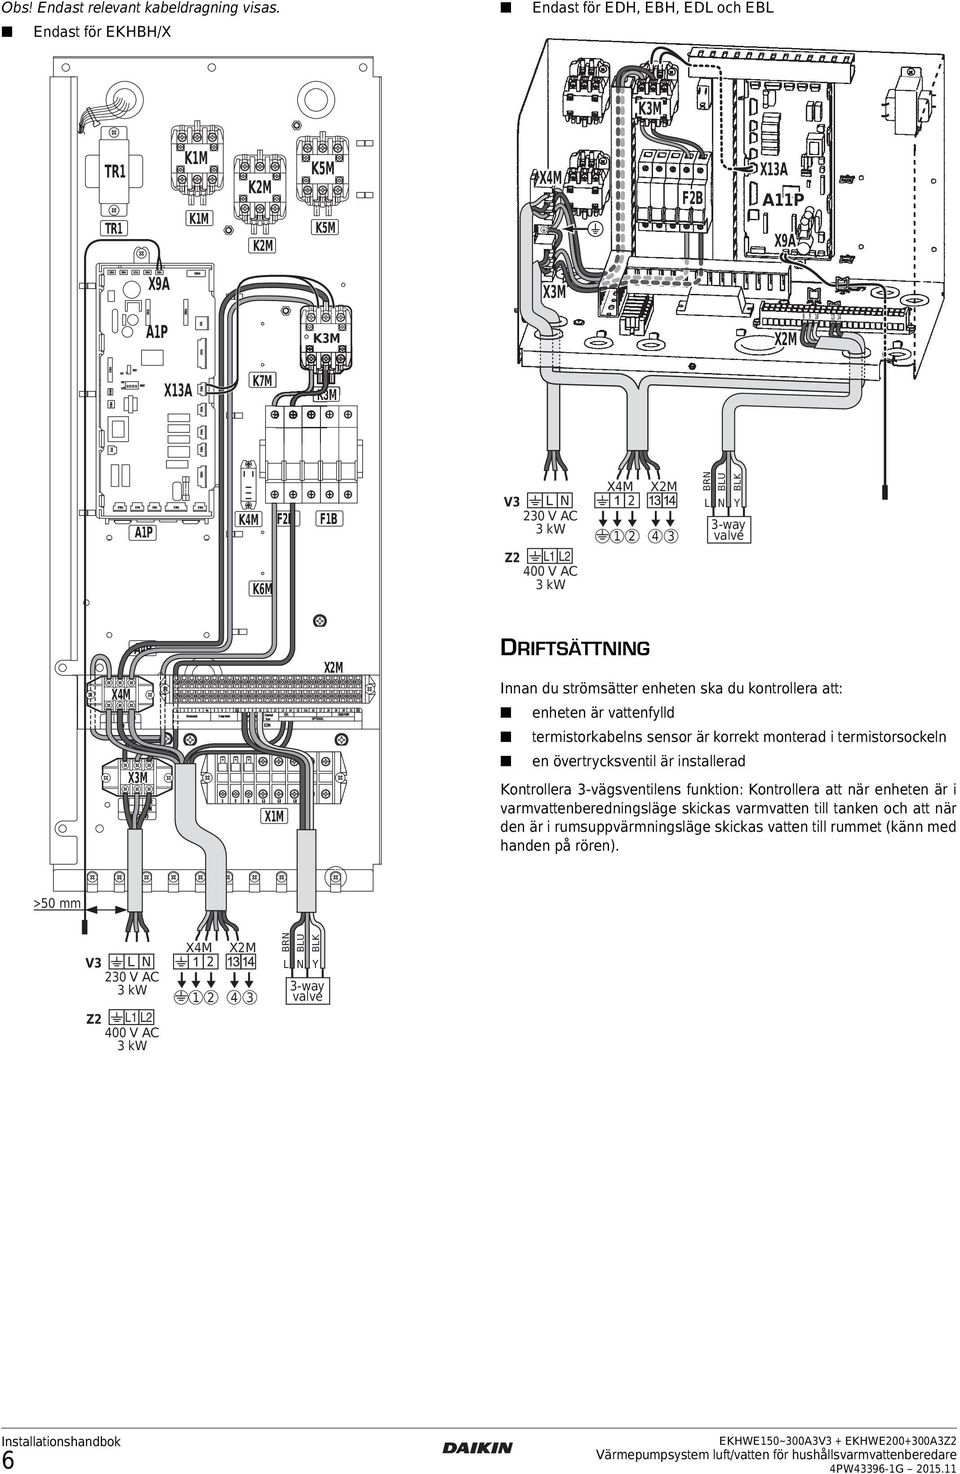 BLK L N Y -way valve A4P X4M X4M XM L L L N XM (0V) XM 4 4a 5 6 7 8 9 0 4 5 5a 6 7 8 9 0 QL thermostat -way valve -way valve thermal SOLAR PUMP fuse OPTIONAL XM L L L N XM DRIFTSÄTTNING Innan du